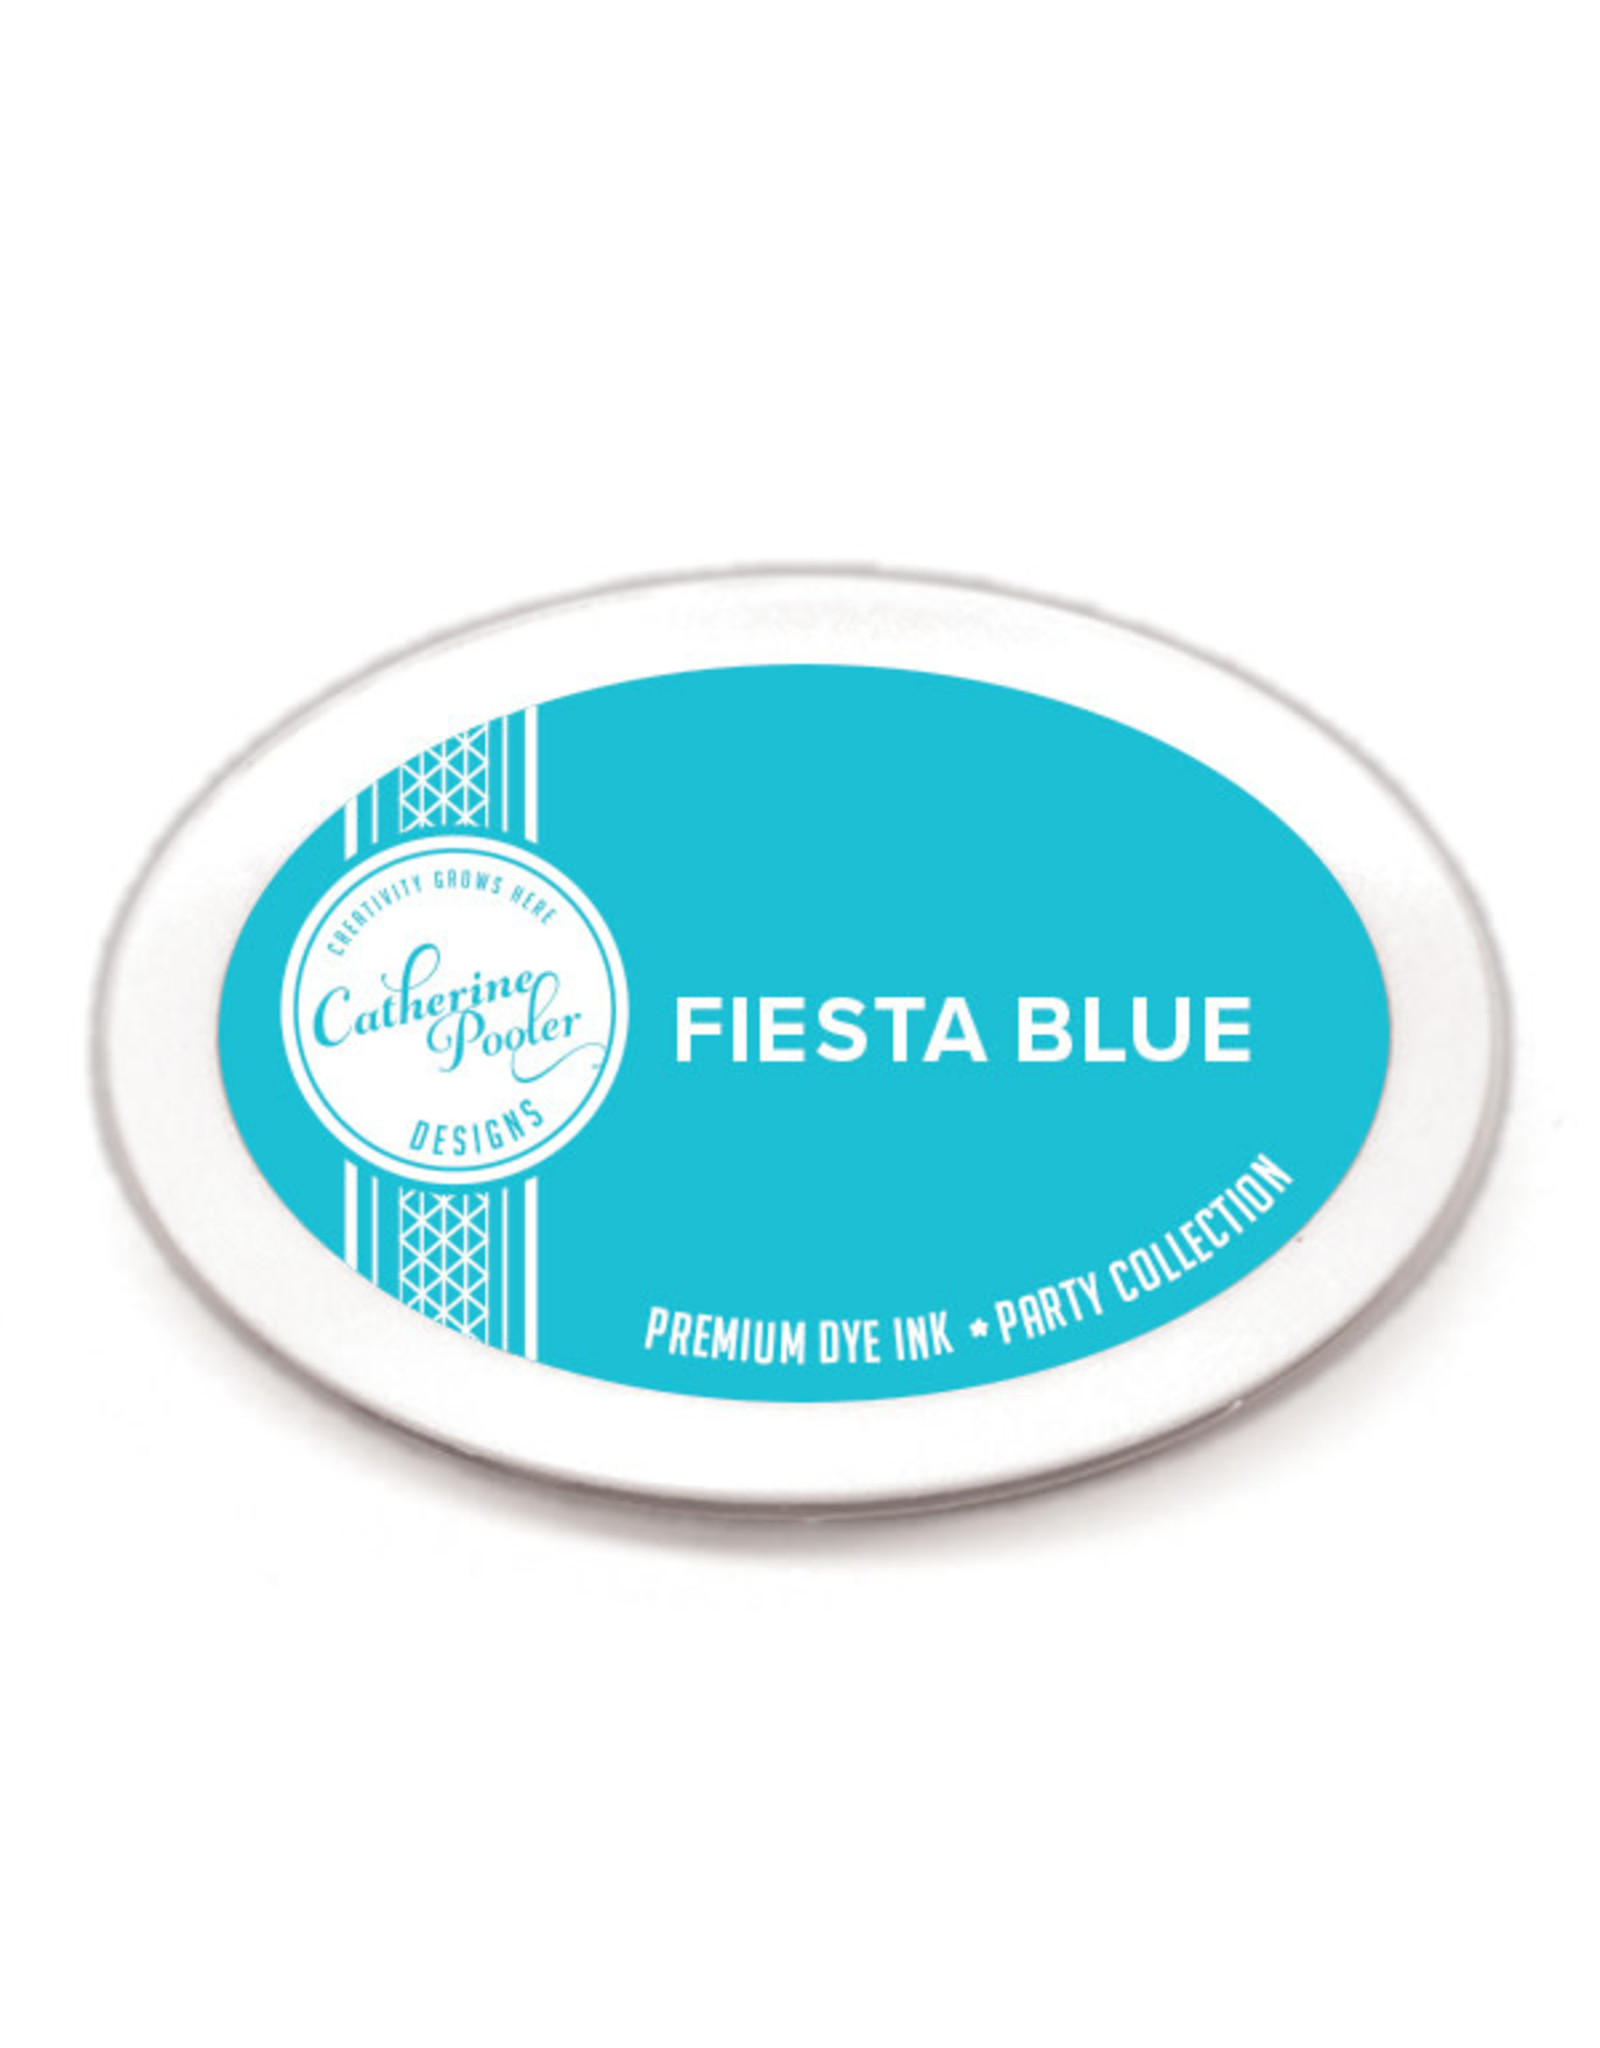 Catherine Pooler Designs Fiesta Blue Ink Pad